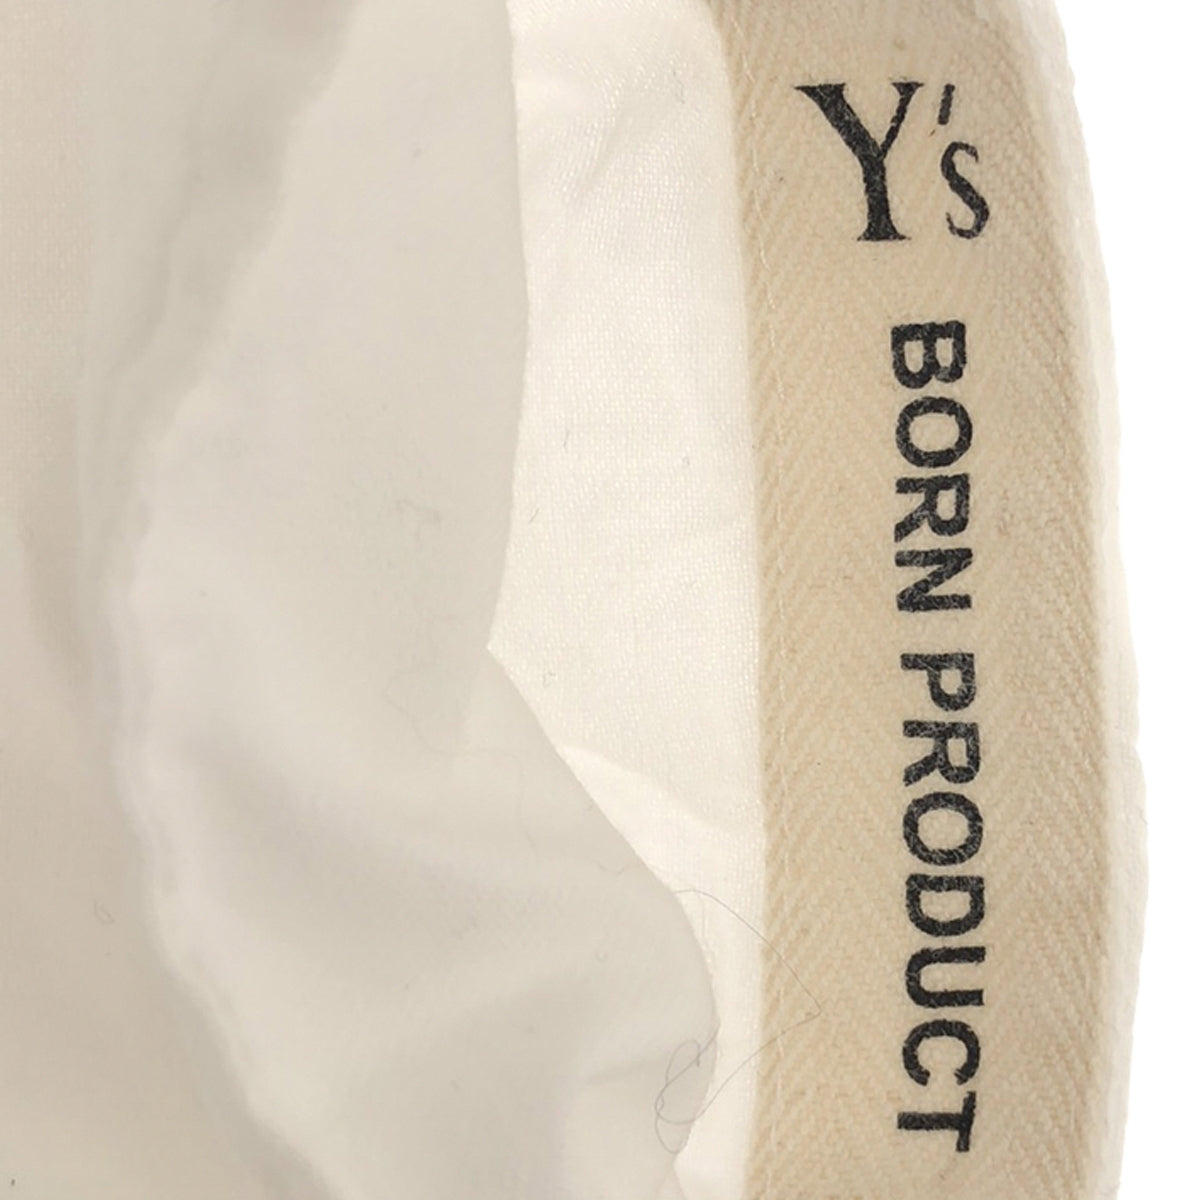 Y's / ワイズヨウジヤマモト | BORN PRODUCT / コットン ビッグシルエット シャツ ブラウス | 2 | レディース